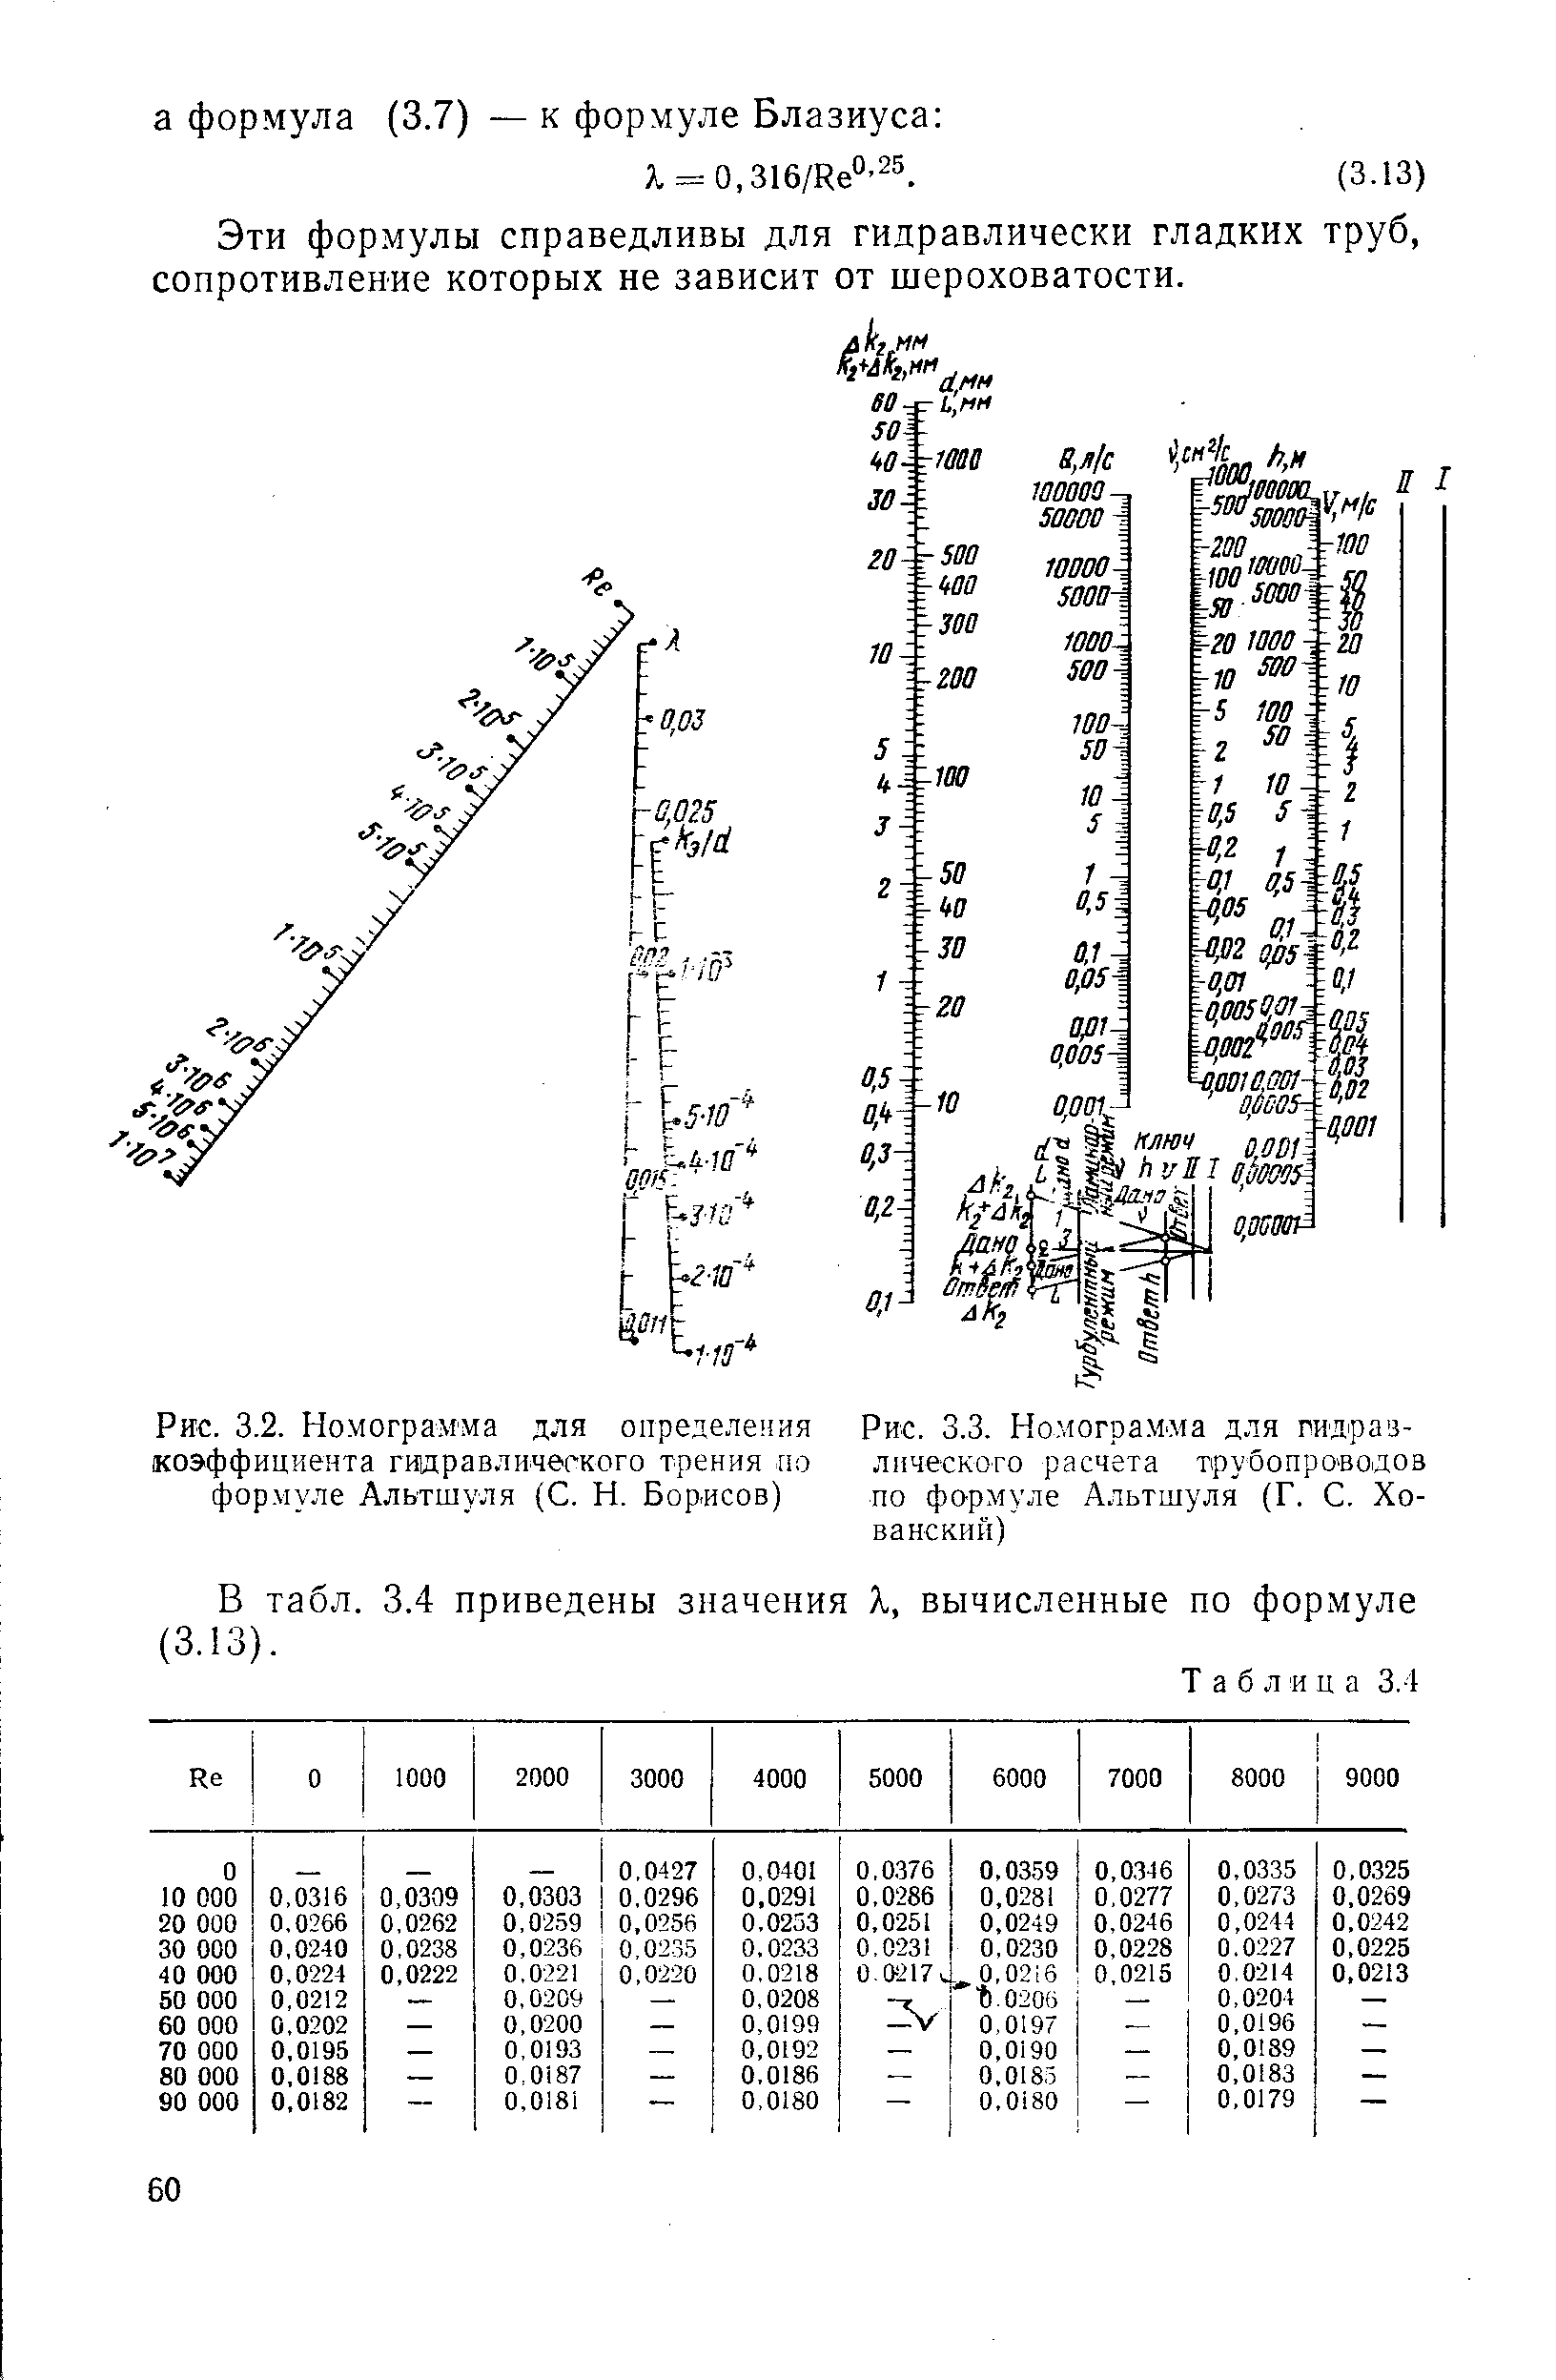 Рис. 3.2. Номограмма для определе 1ия коэффициента гииравличегкого трения по формуле Альтшуля (С. Н. Борисов)
